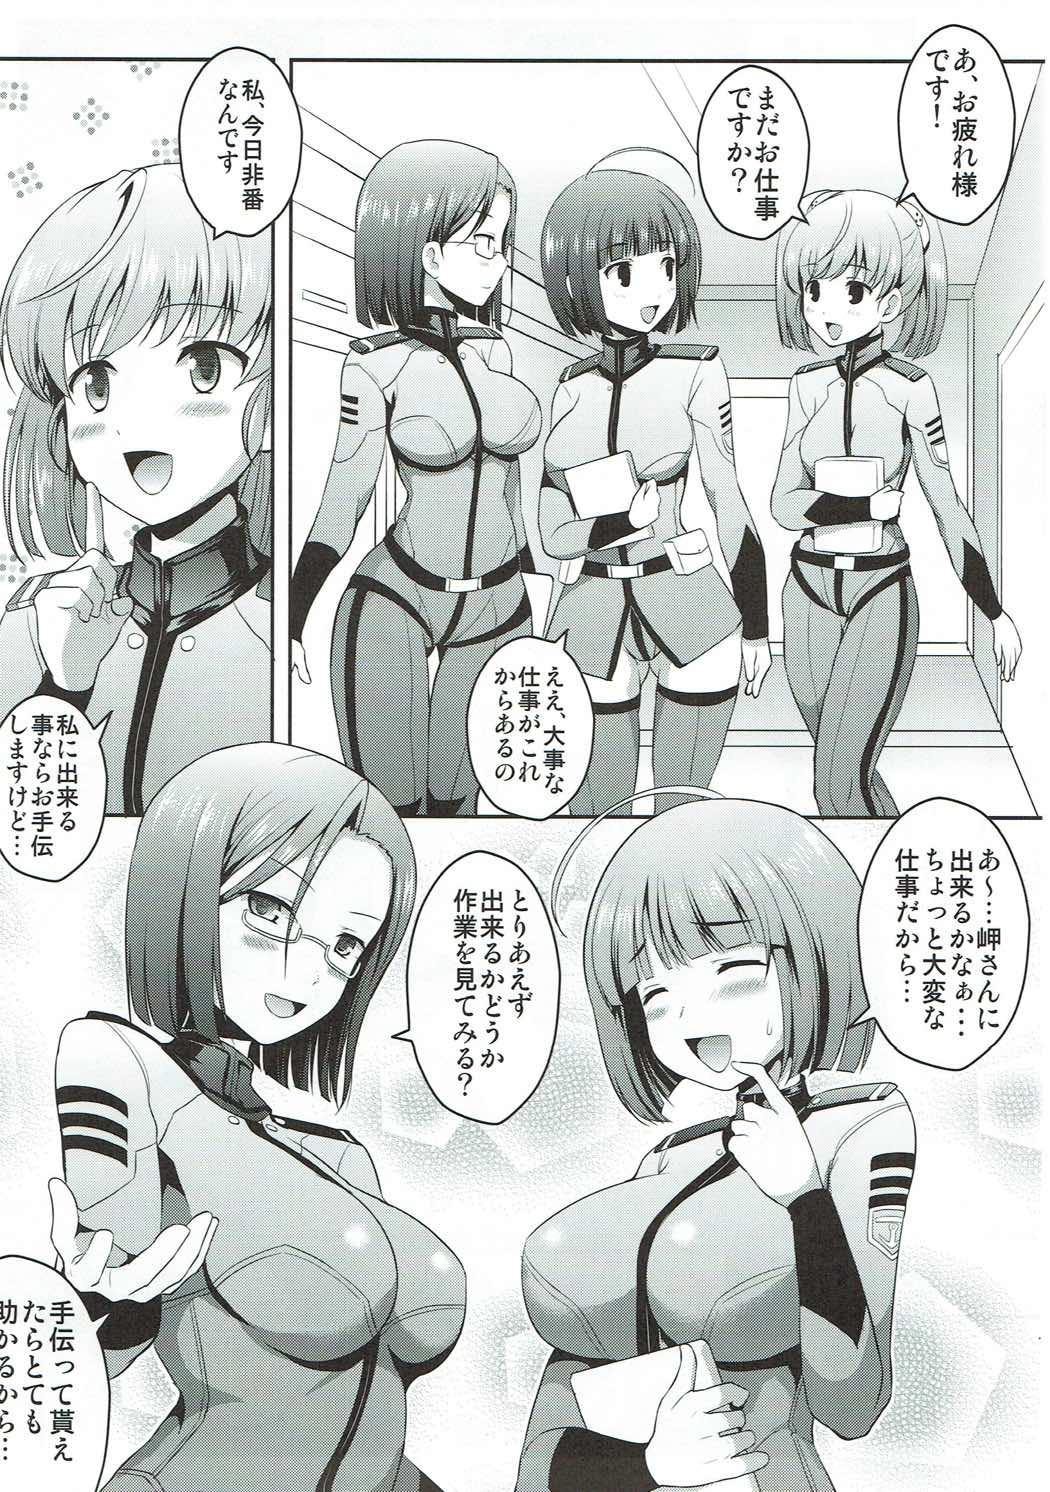 Teen Uchuu Senkan Yamato Sei Shori ka - Space battleship yamato Milfporn - Page 6